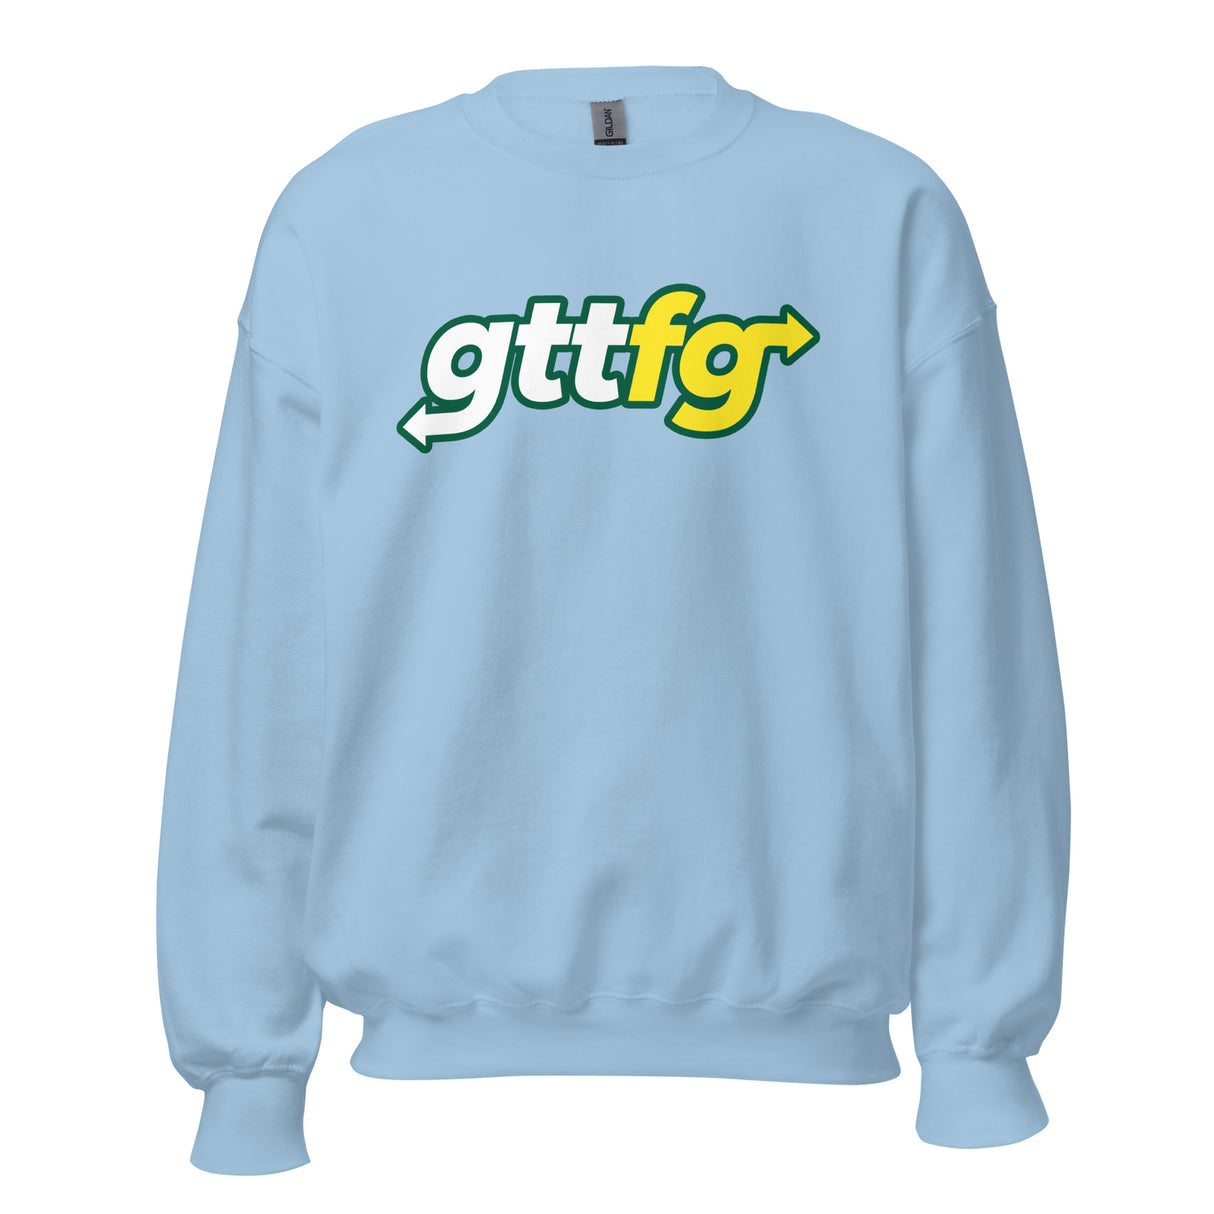 GTTFG Subway Sweatshirt